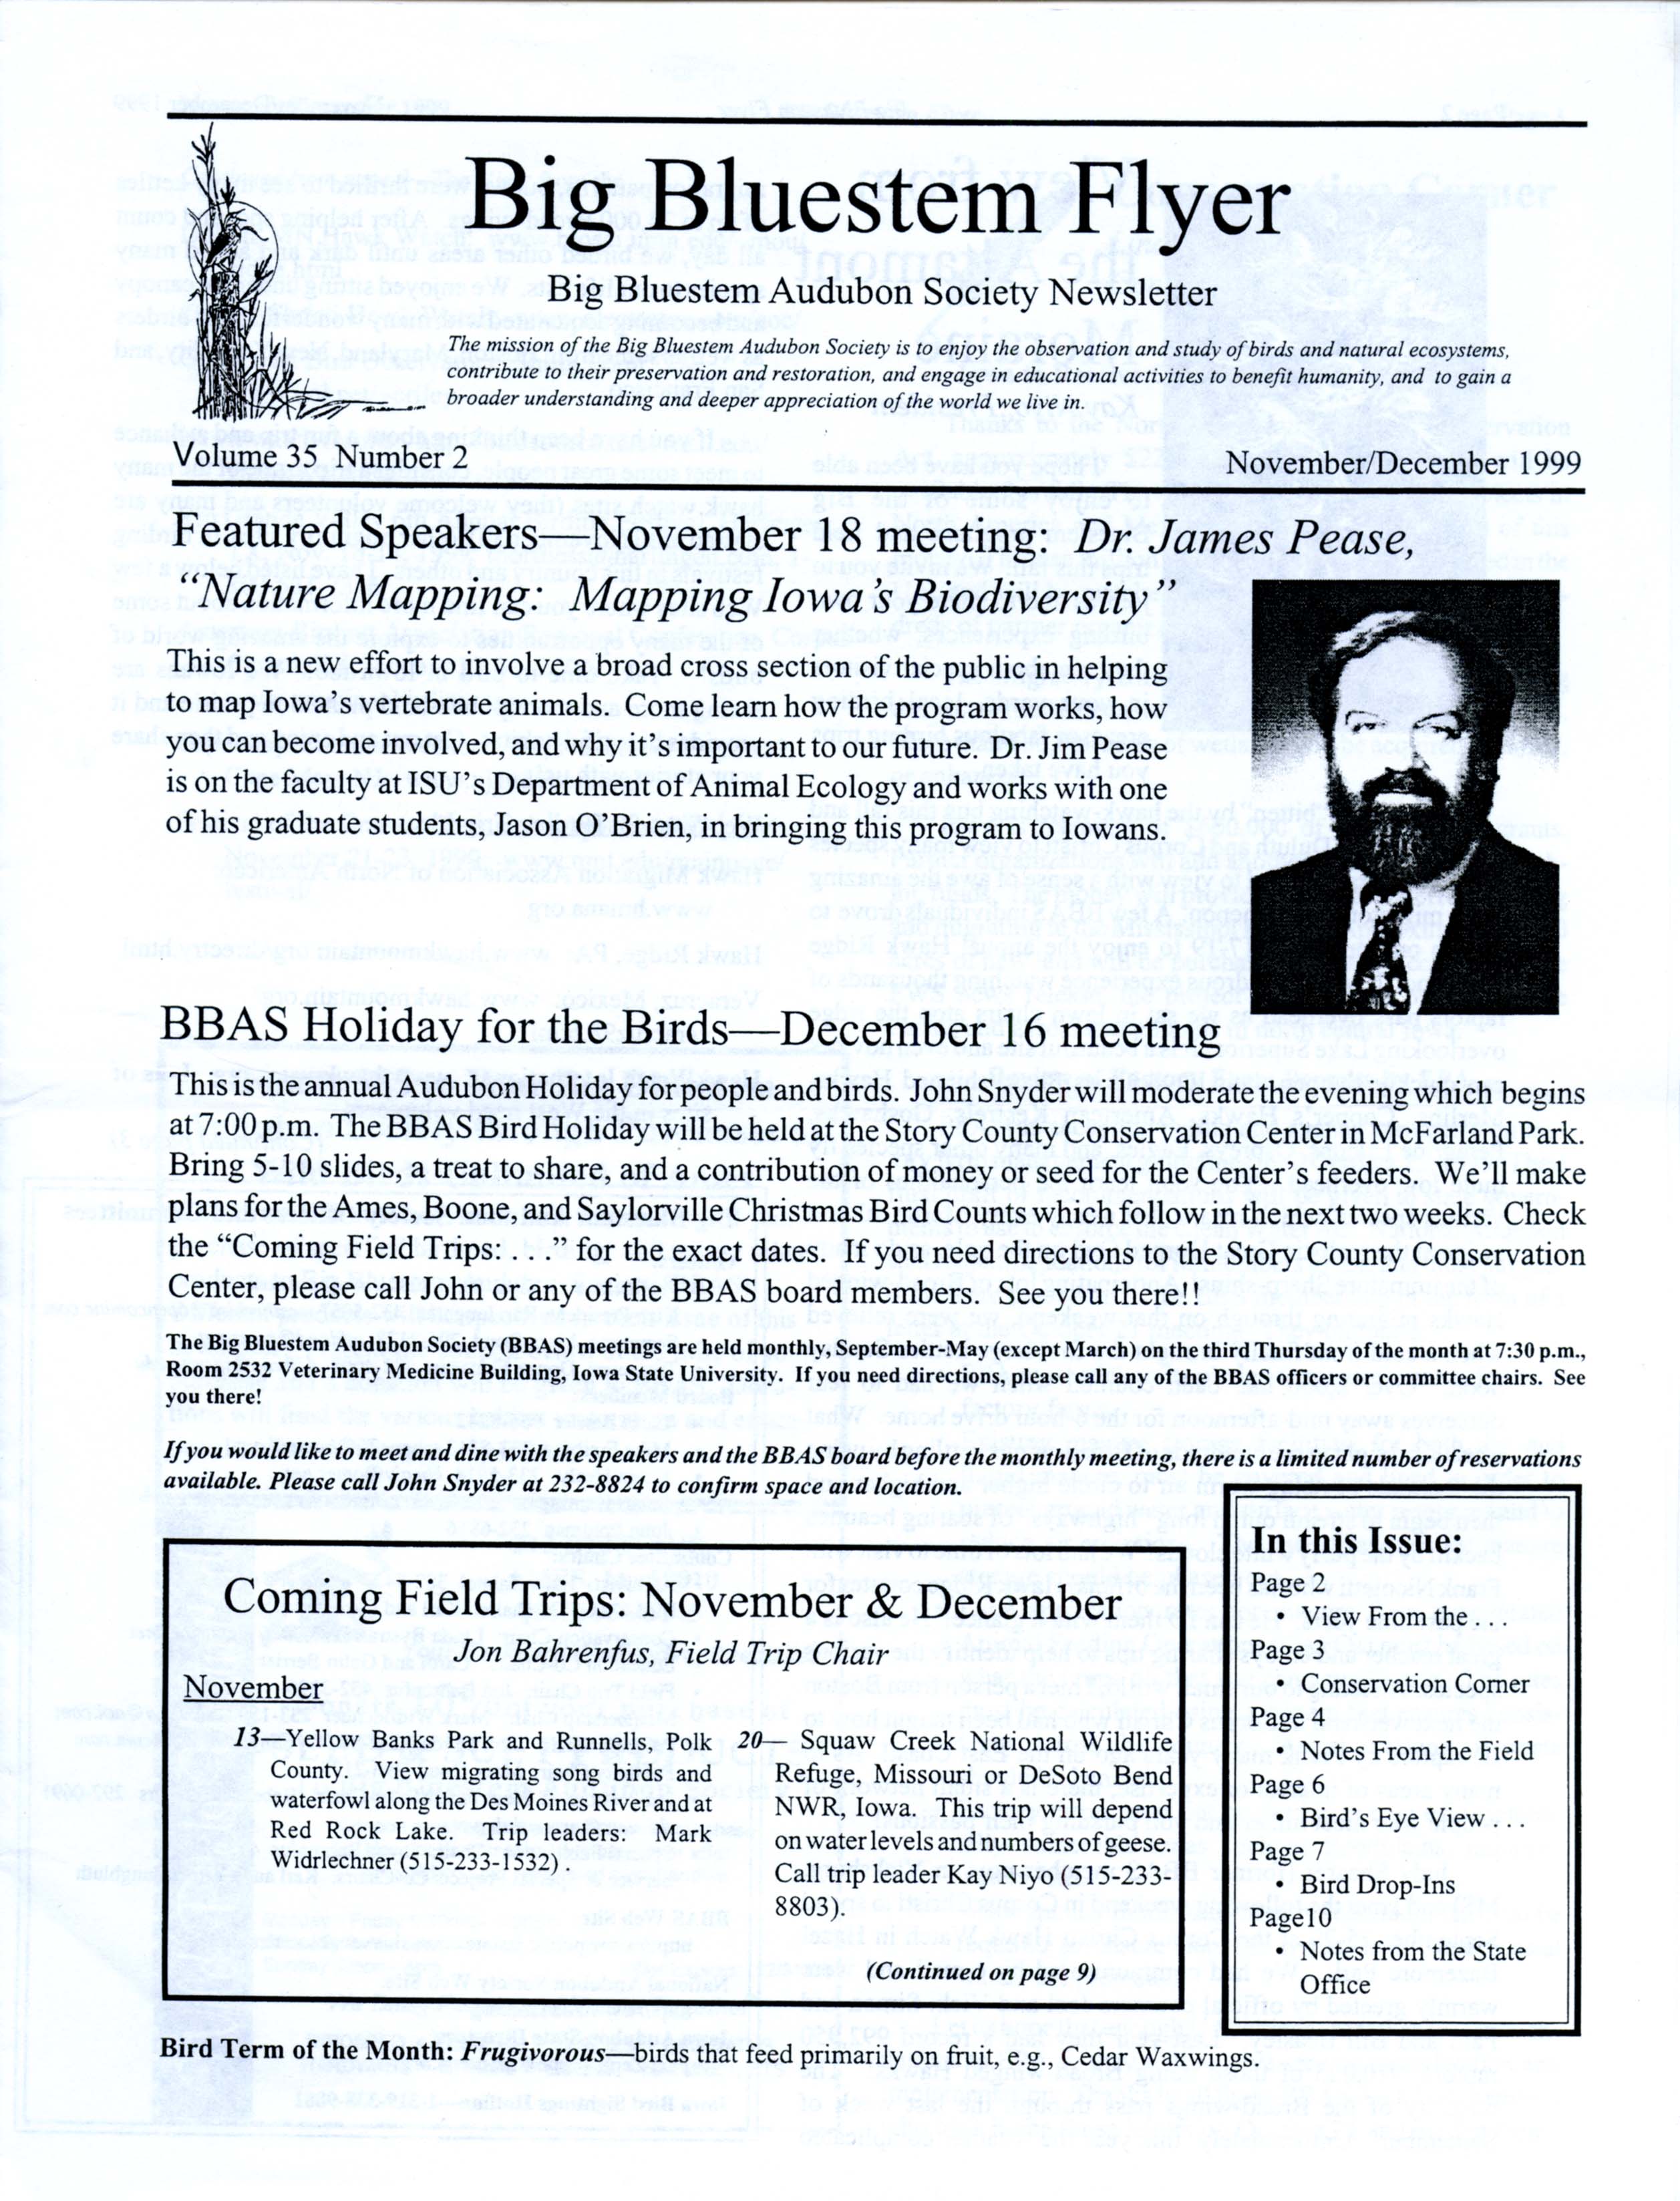 Big Bluestem Flyer, Volume 35, Number 2, November/December 1999